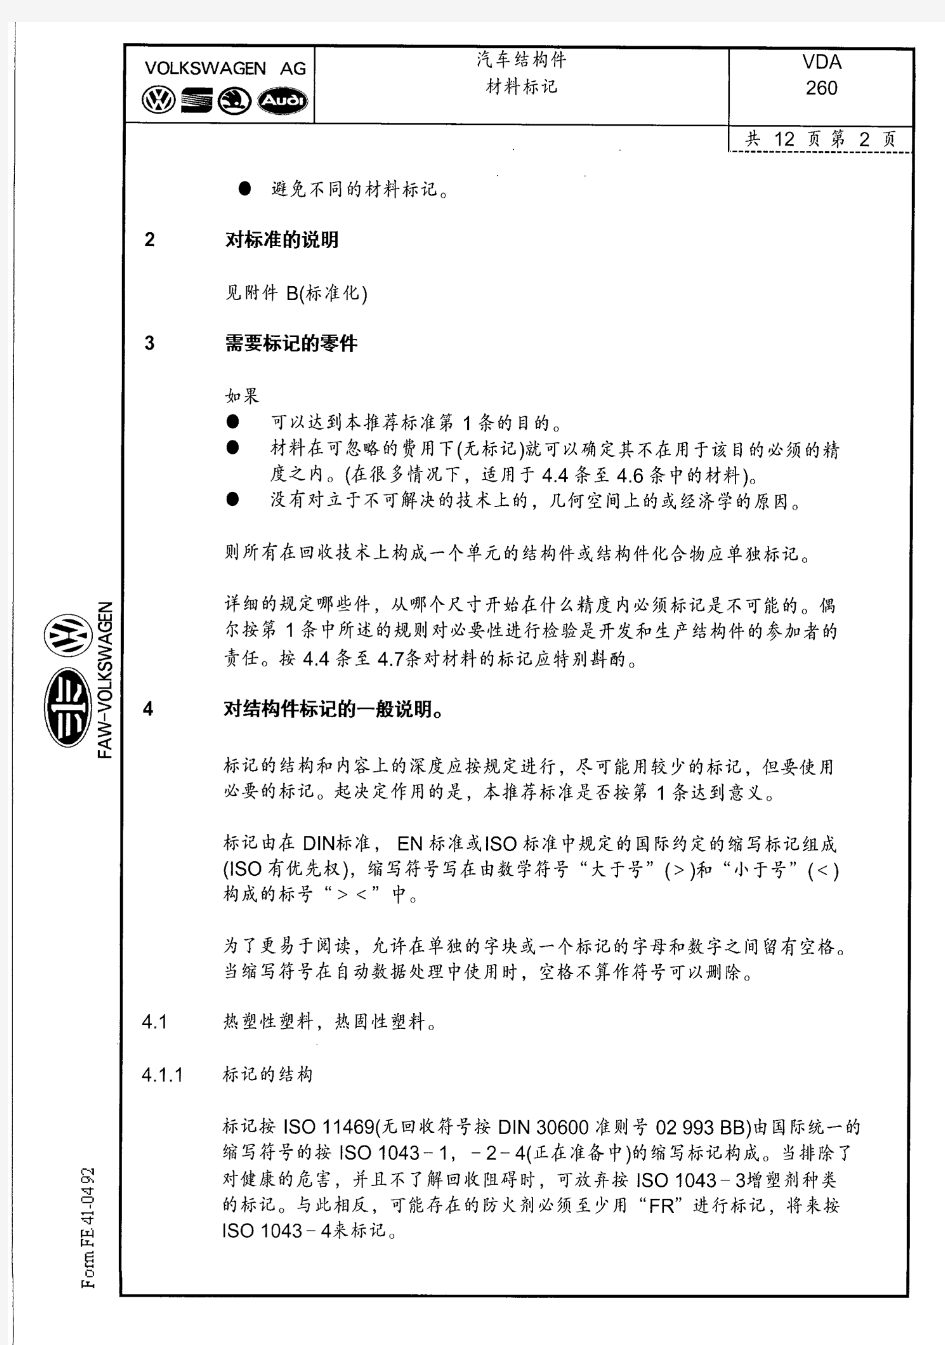 VDA260(中文版)__材料标记